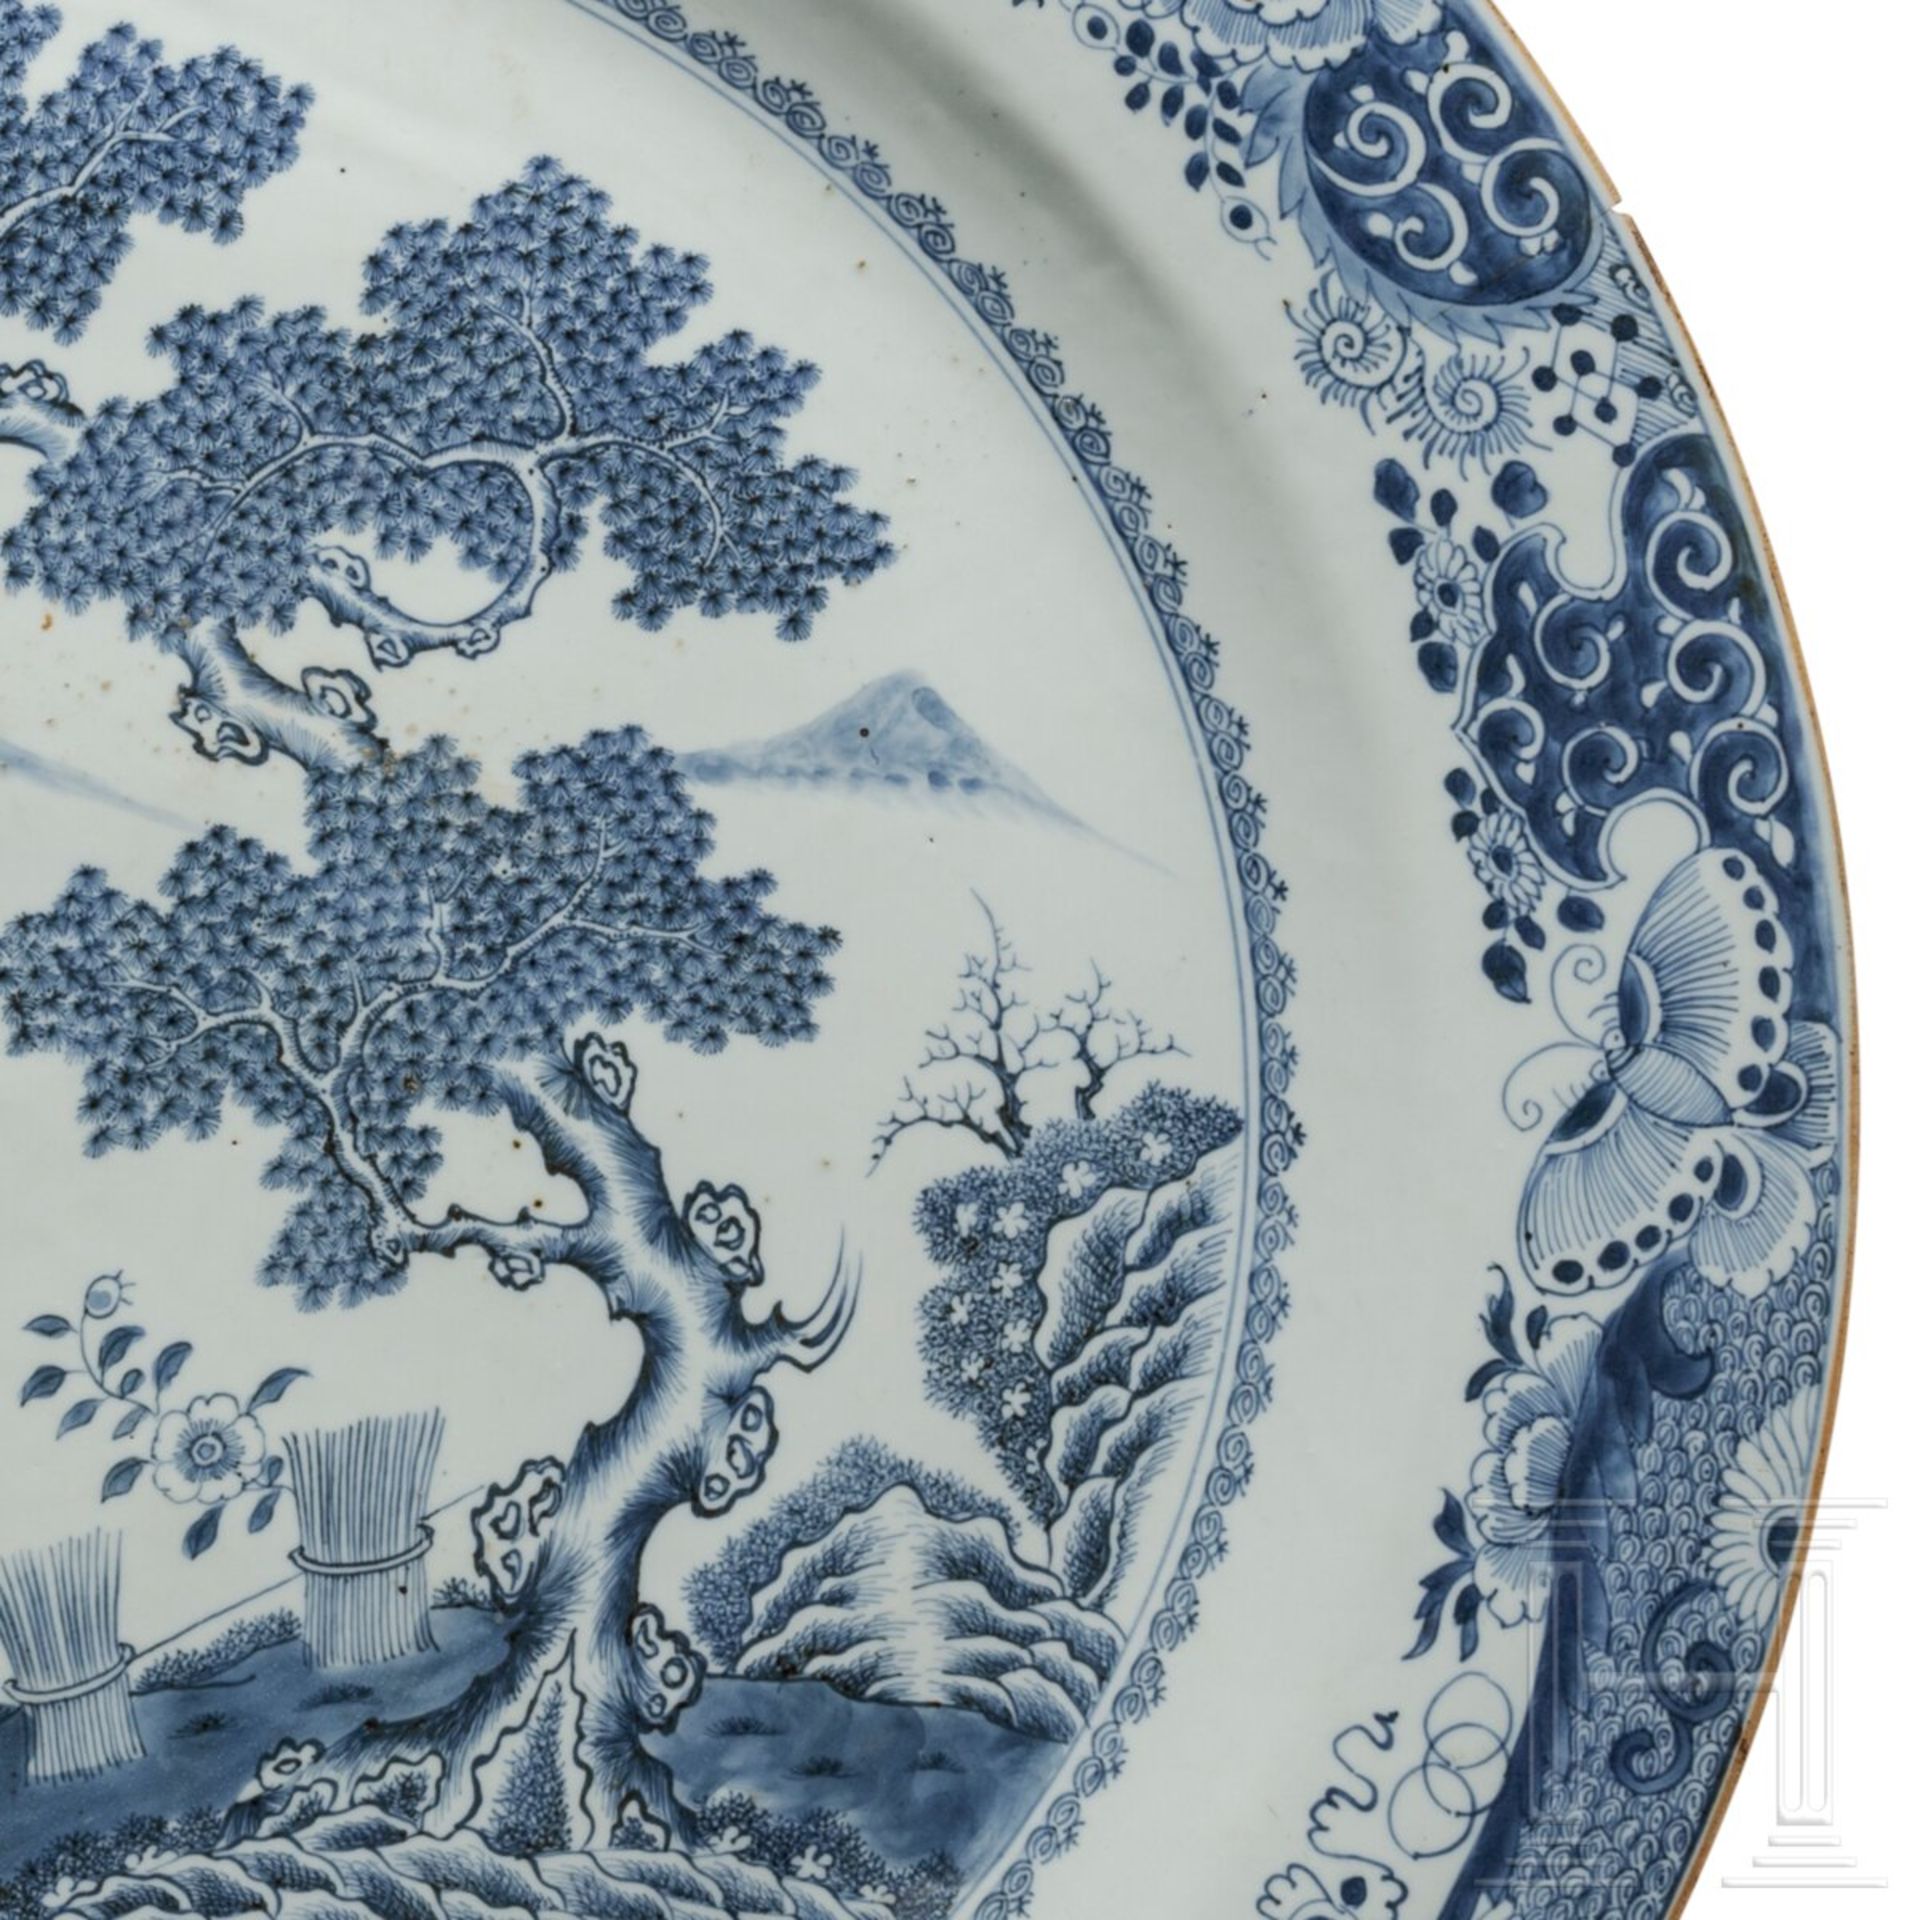 Außergewöhnlich großer blau-weißer Porzellanteller mit Landschaftsszene, China, 19. Jhdt.  - Bild 4 aus 4